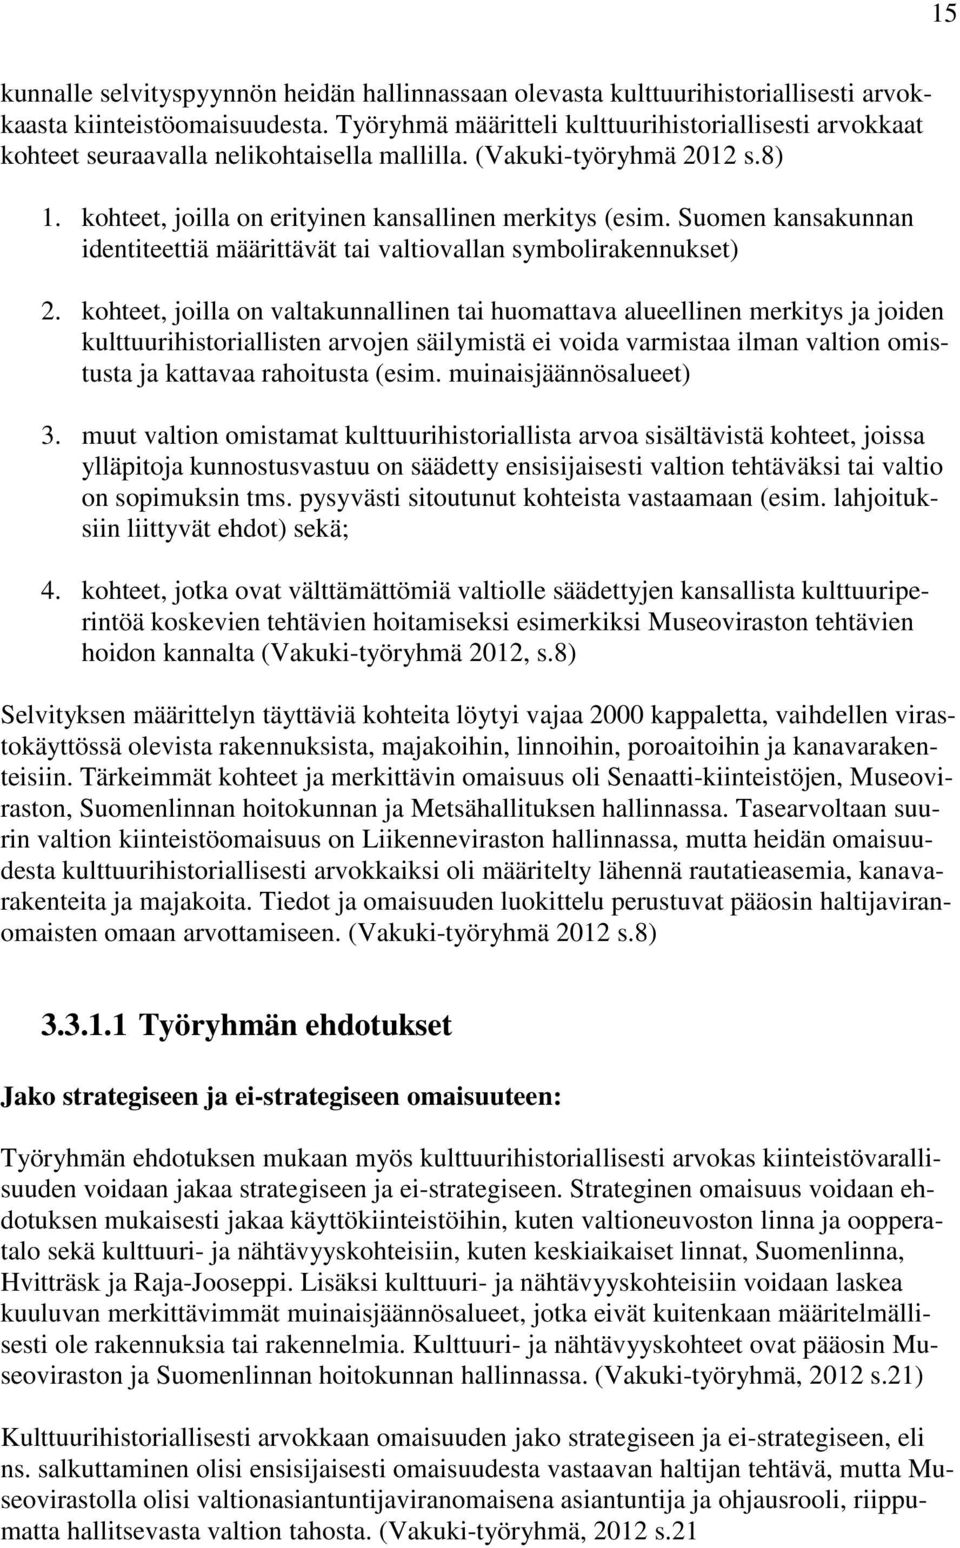 Suomen kansakunnan identiteettiä määrittävät tai valtiovallan symbolirakennukset) 2.